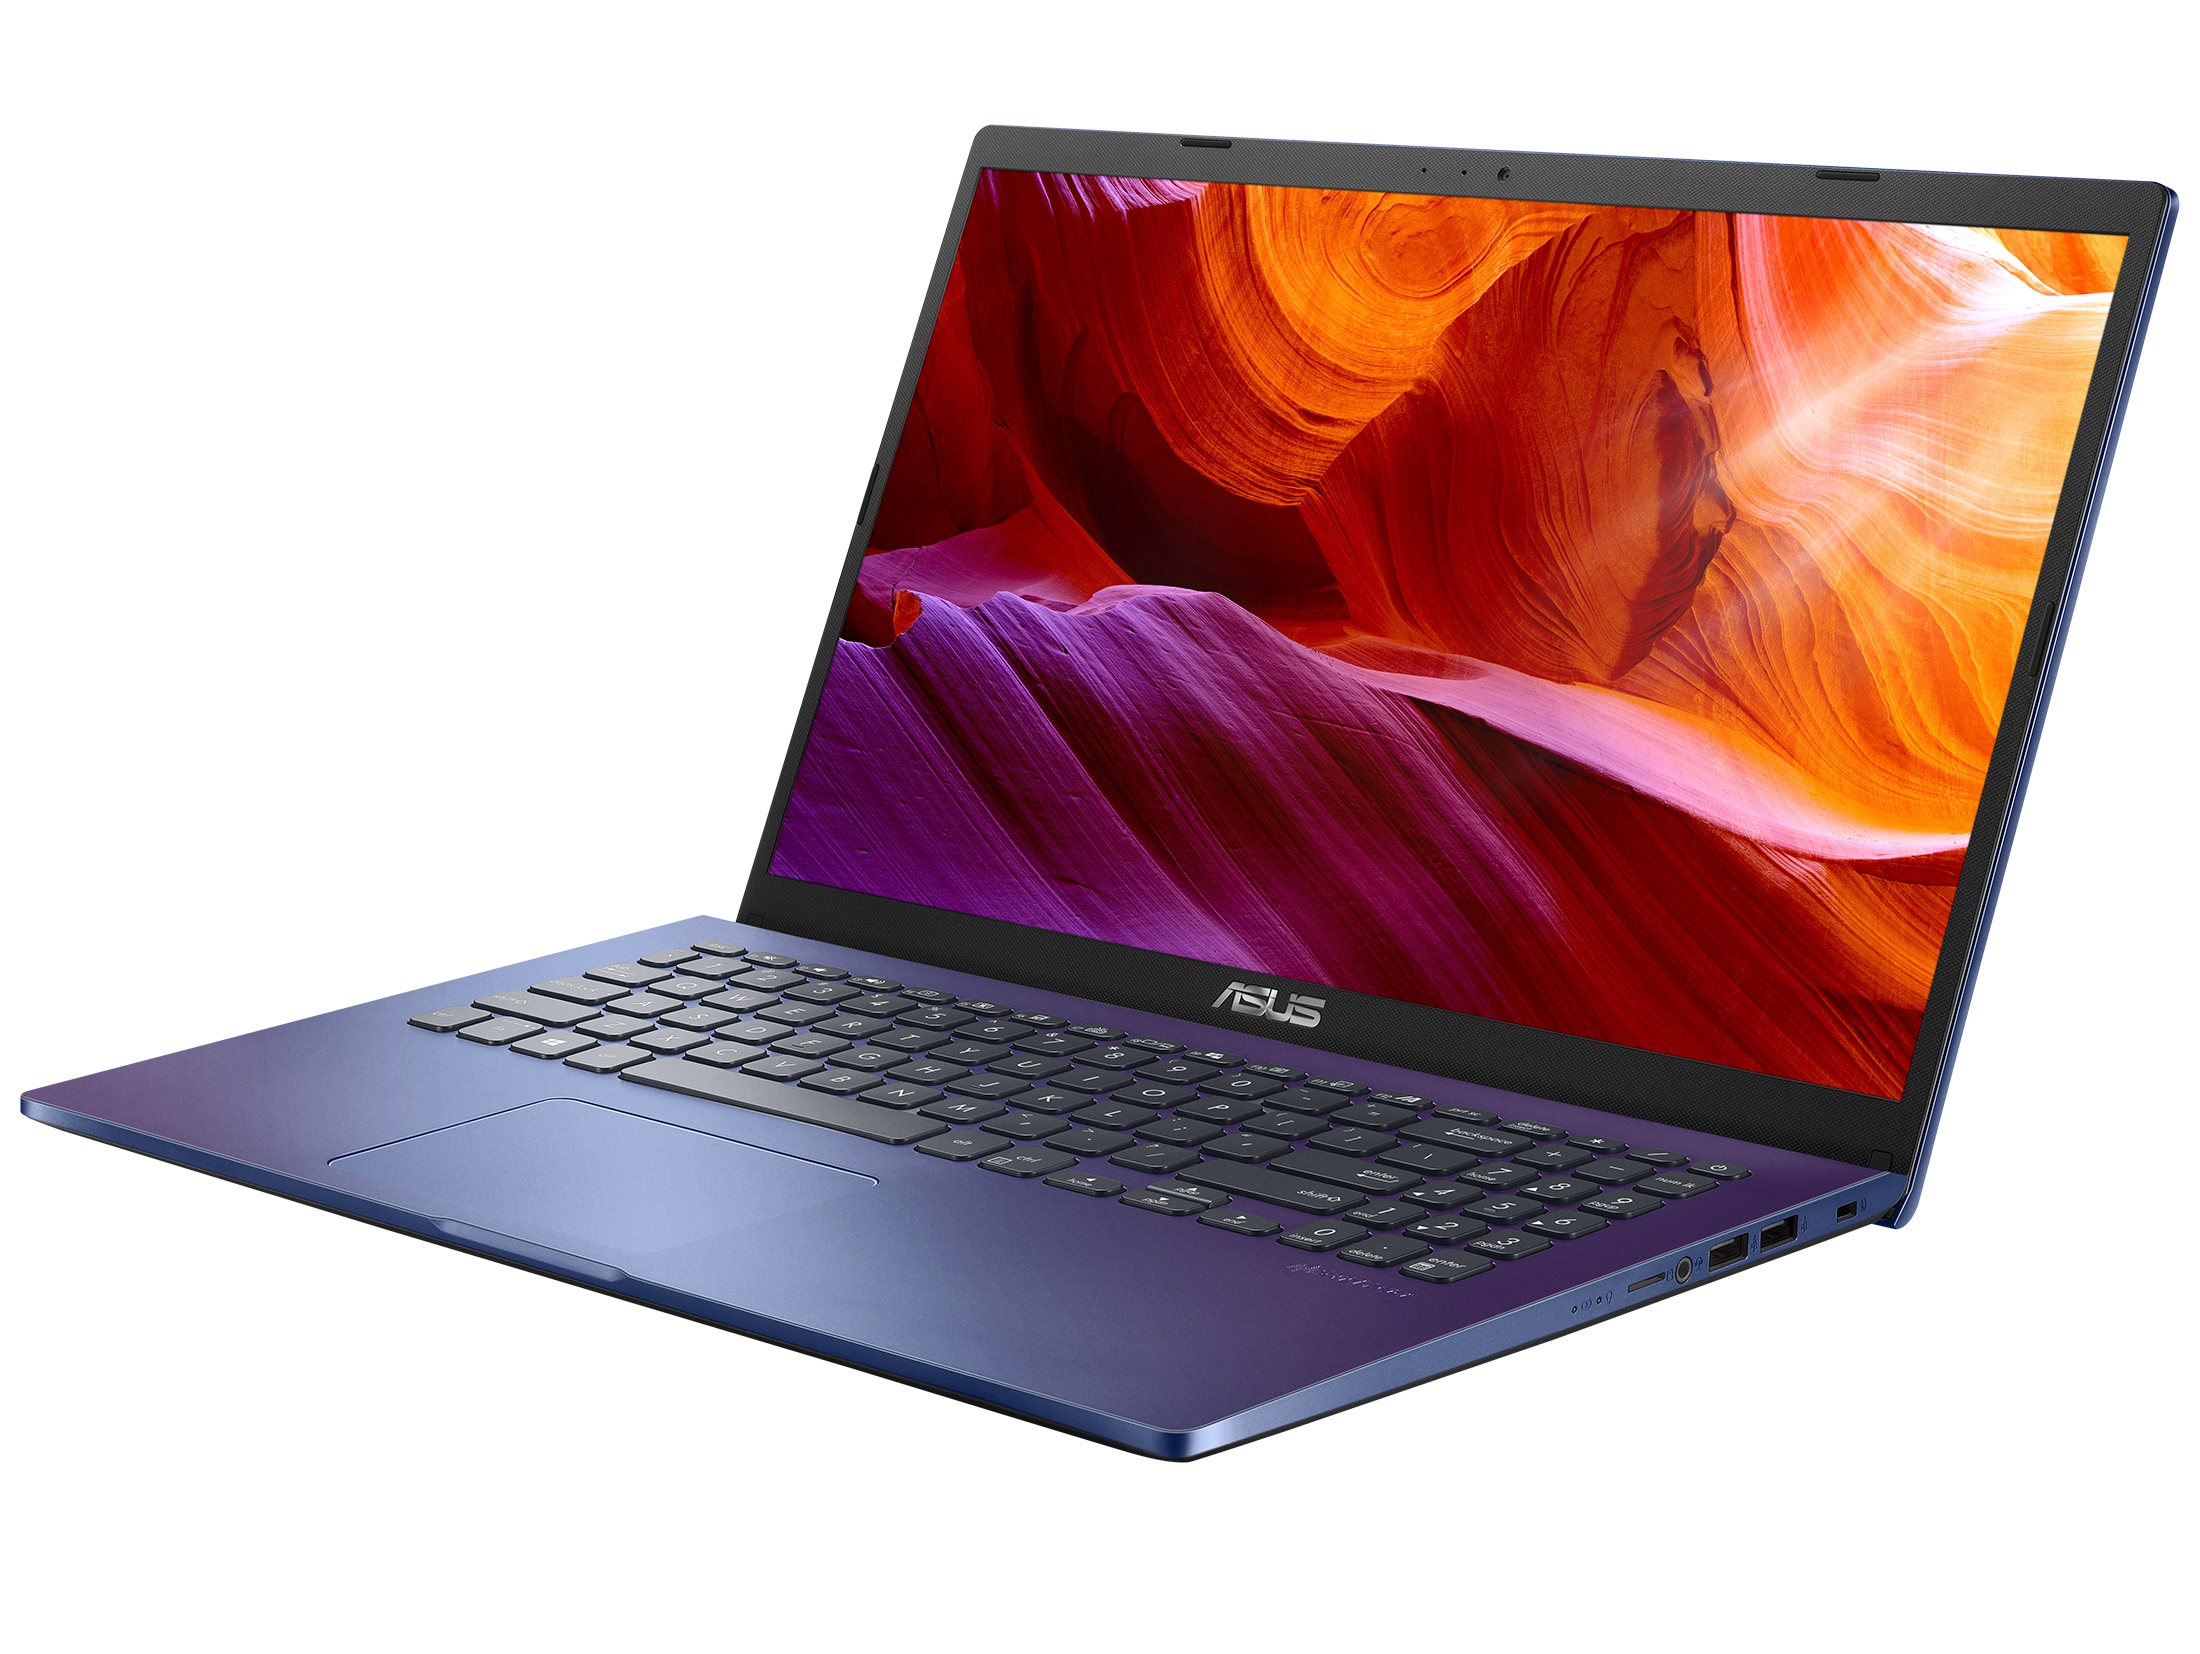 Laptop Asus X509JA-BR770T sa Windows 10 Home (moguce ugraditi m.2 ssd) #rasprodajact